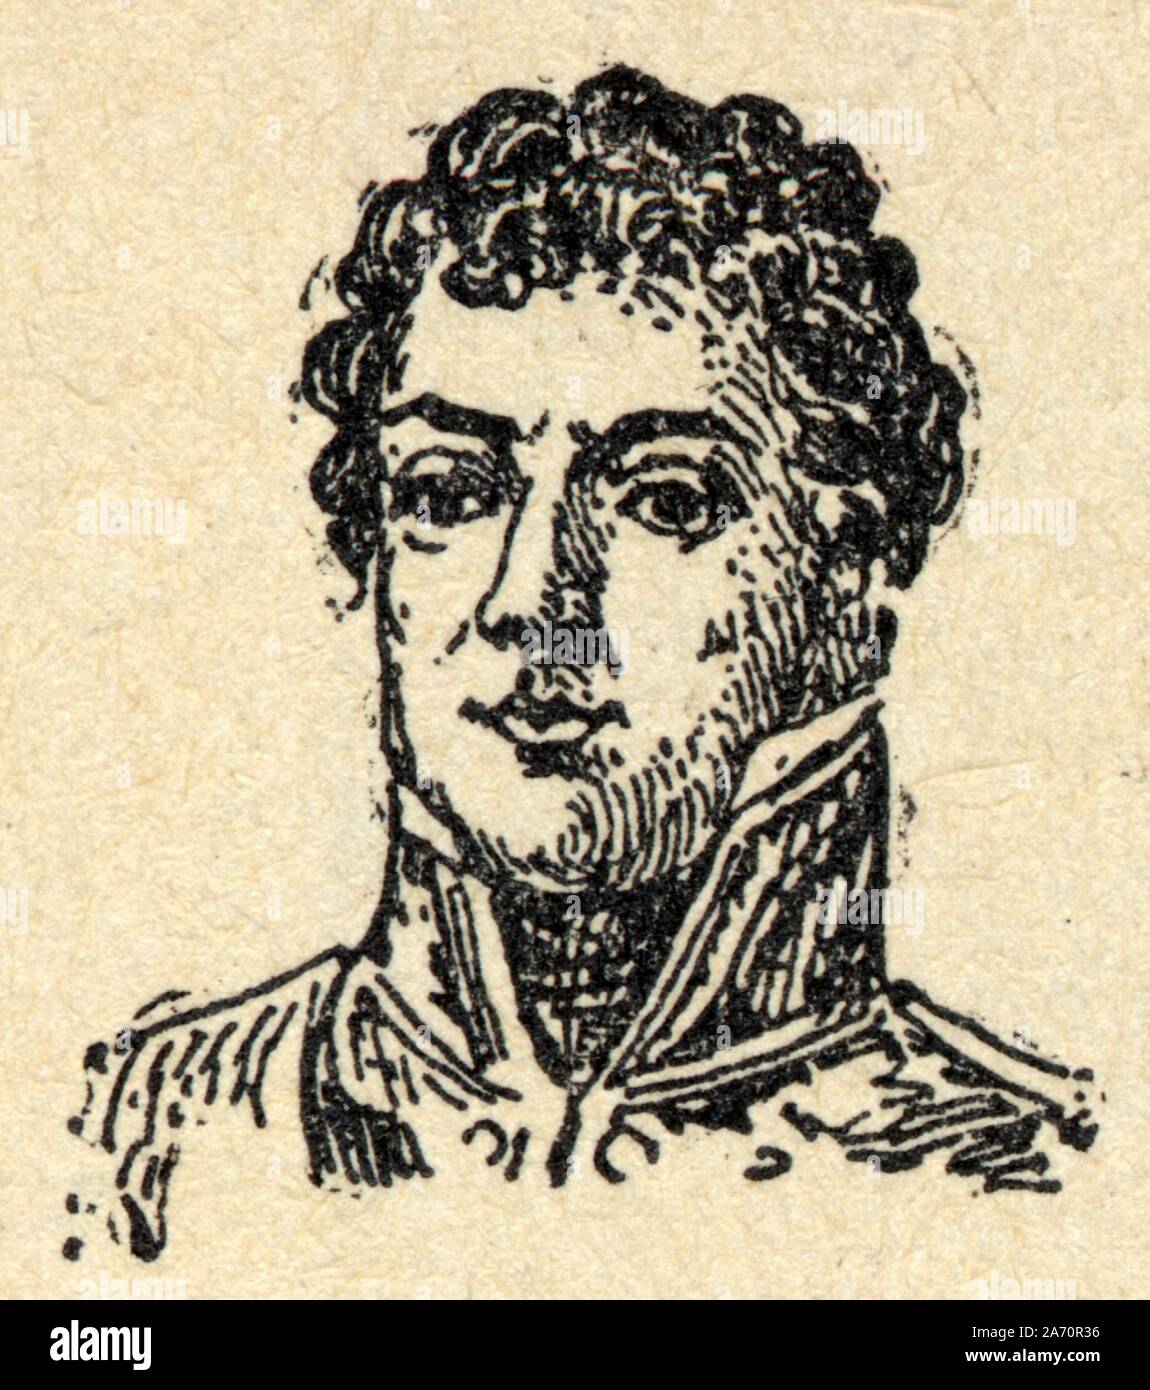 Louis-Alexandre Berthier, príncipe de Neuchâtel et Valangin, príncipe de Wagram, né à Versailles le 20 novembre 1753 et mort à Bamberg le 1ᵉʳ juin 1815, e Foto de stock